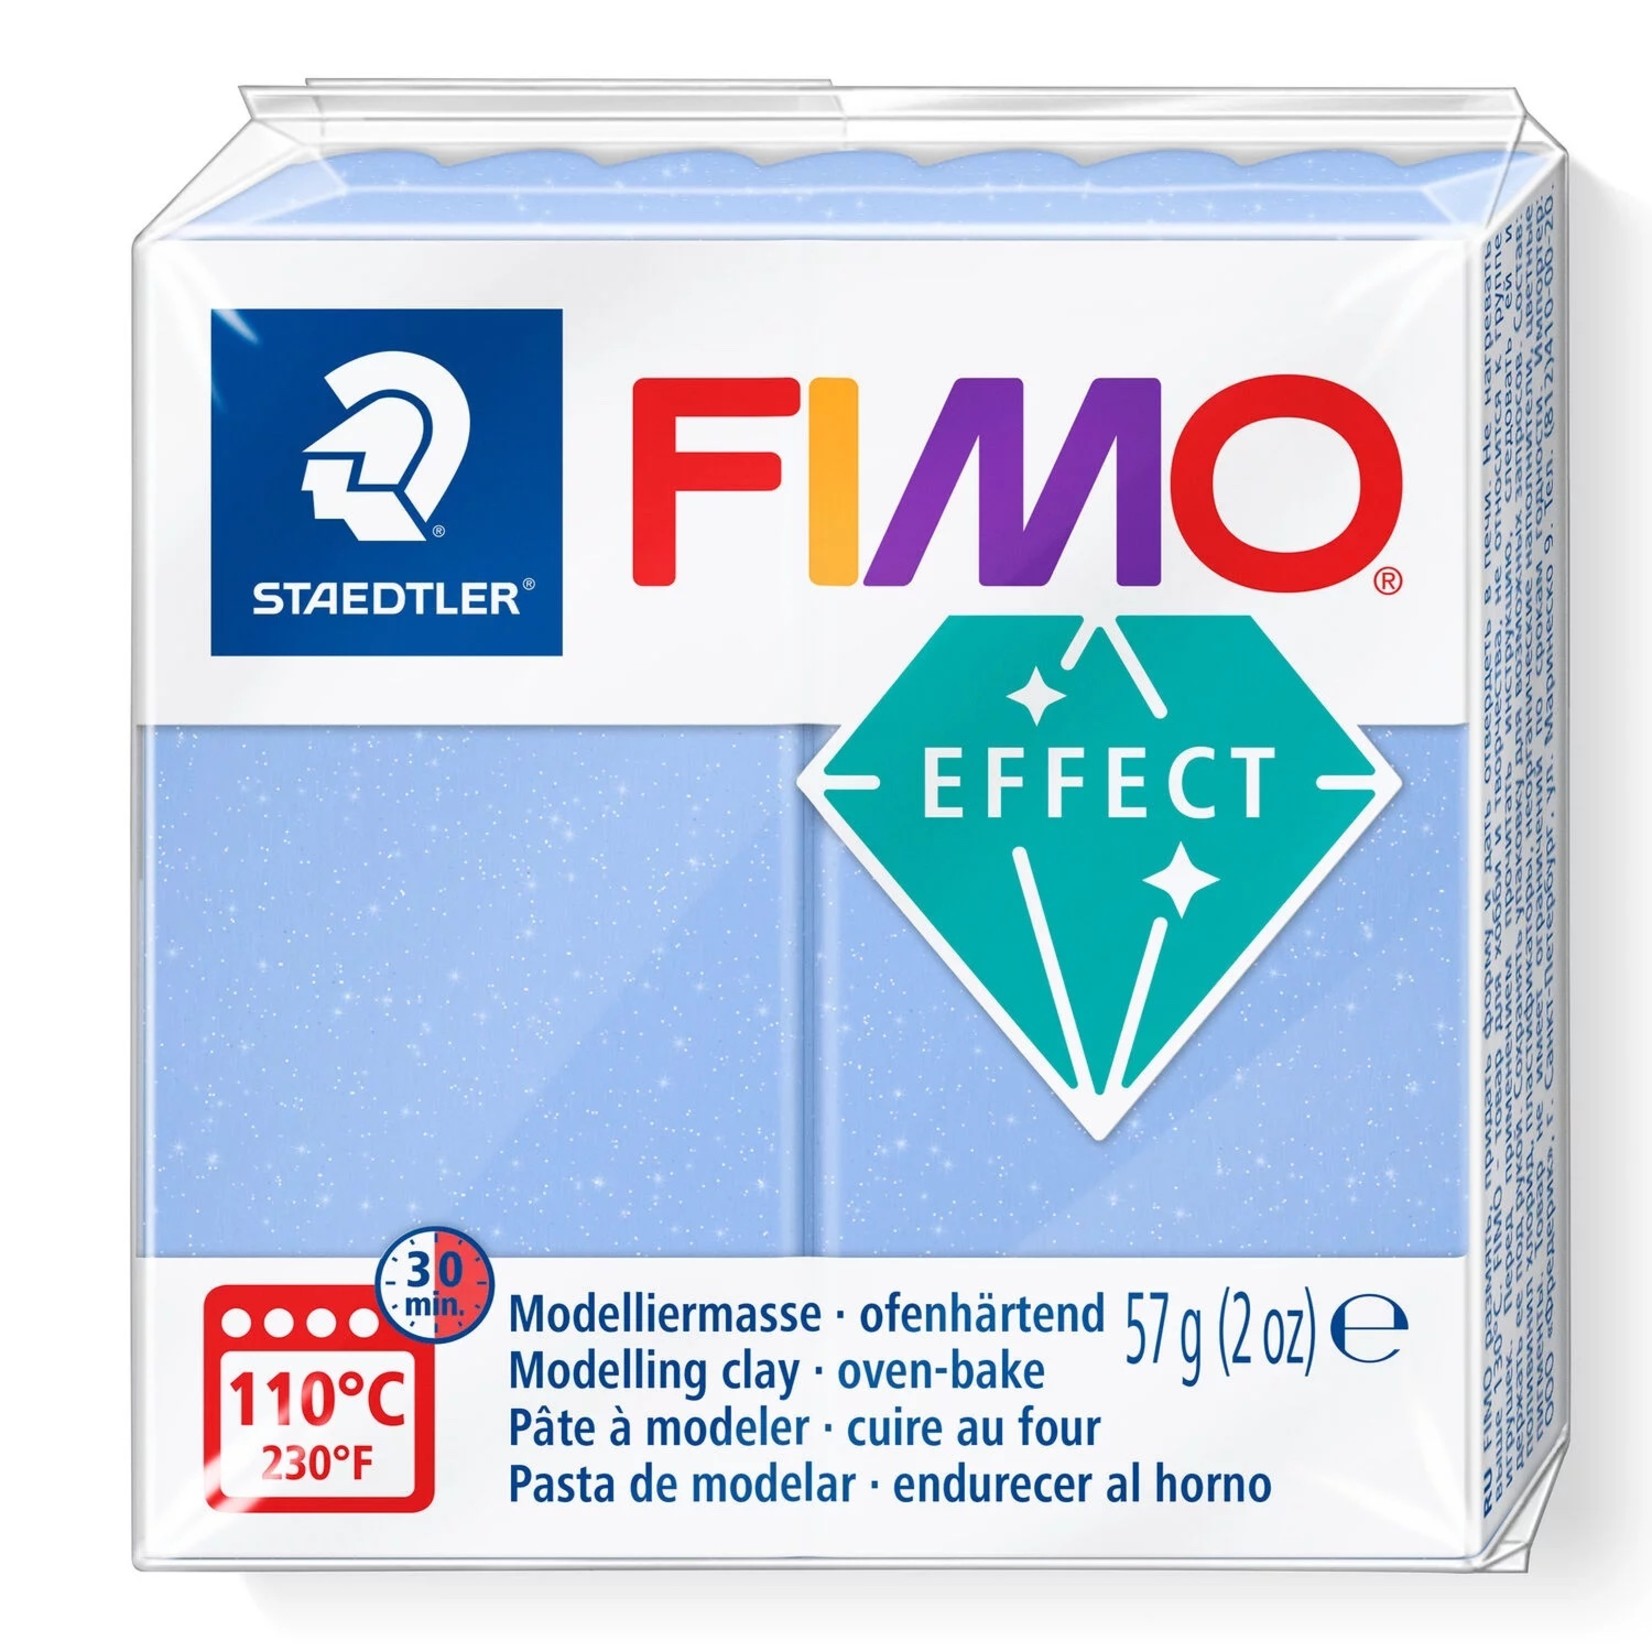 STAEDTLER FIMO EFFECT GEMSTONE 386 BLUE AGATE